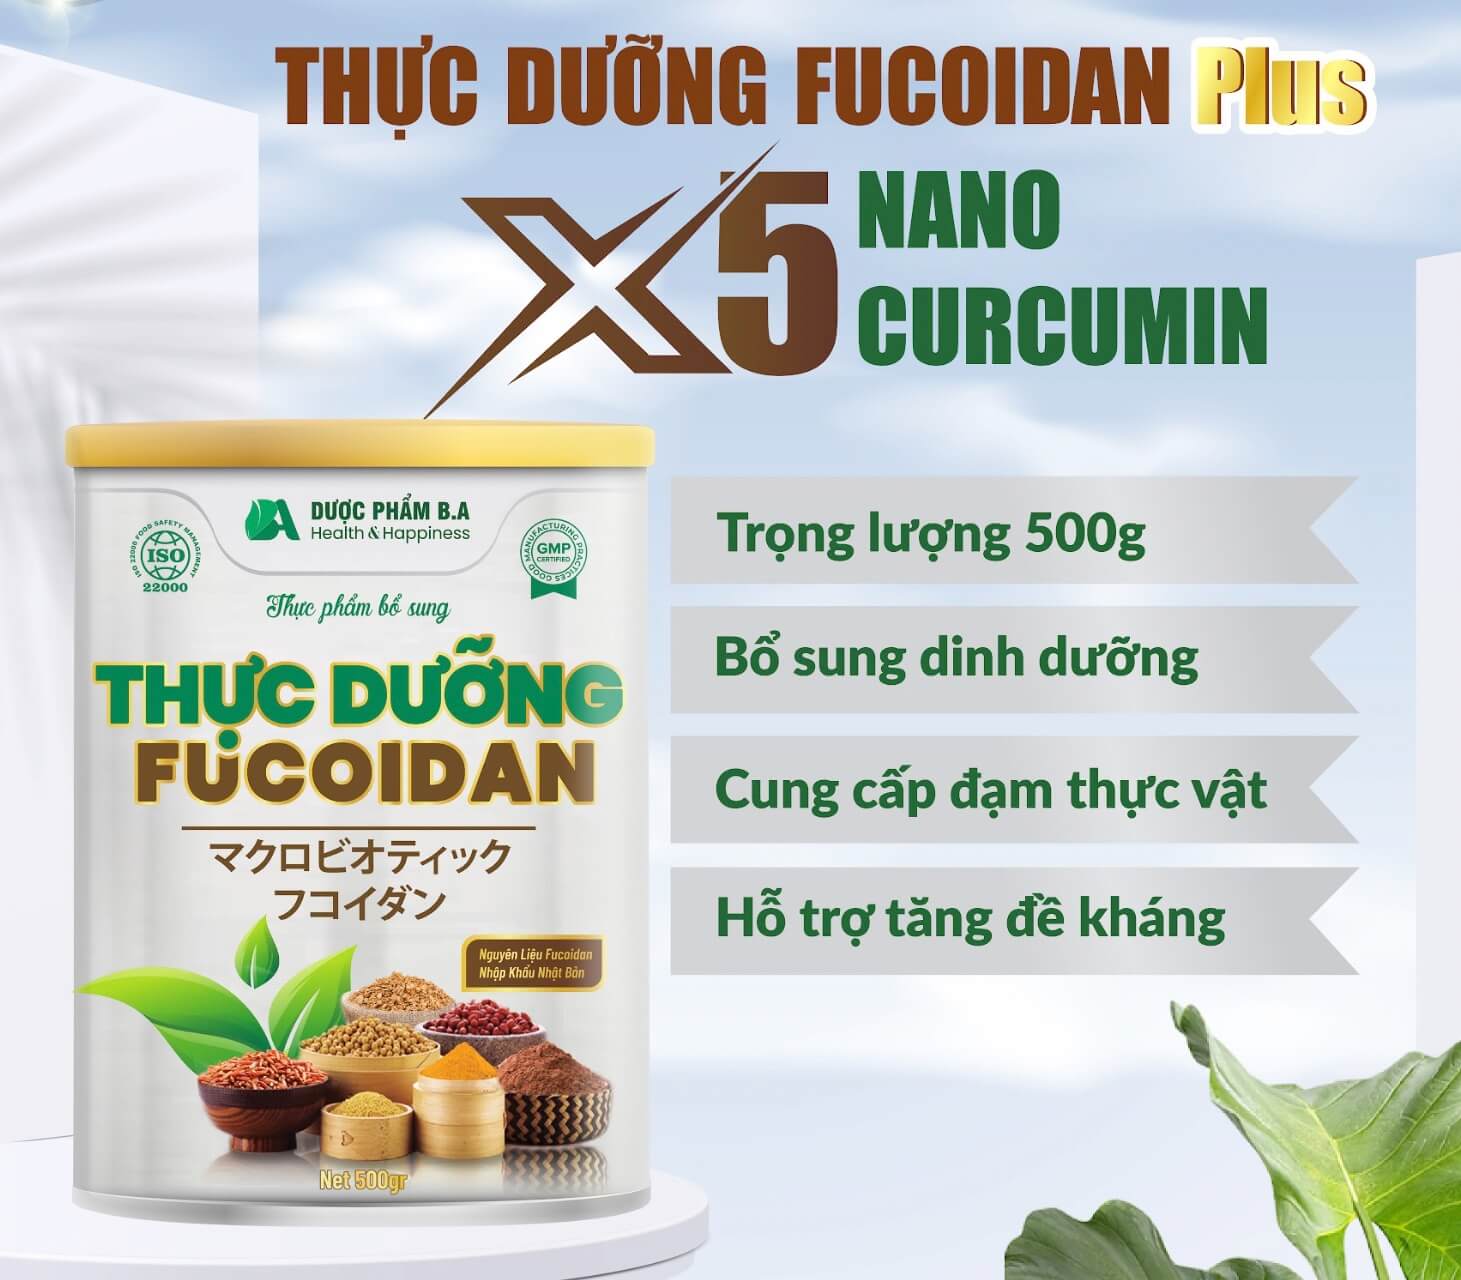 Thực dưỡng Fucoidan có tốt không ngũ cốc Thực dưỡng Fucoidan giá bao nhiêu hình 18